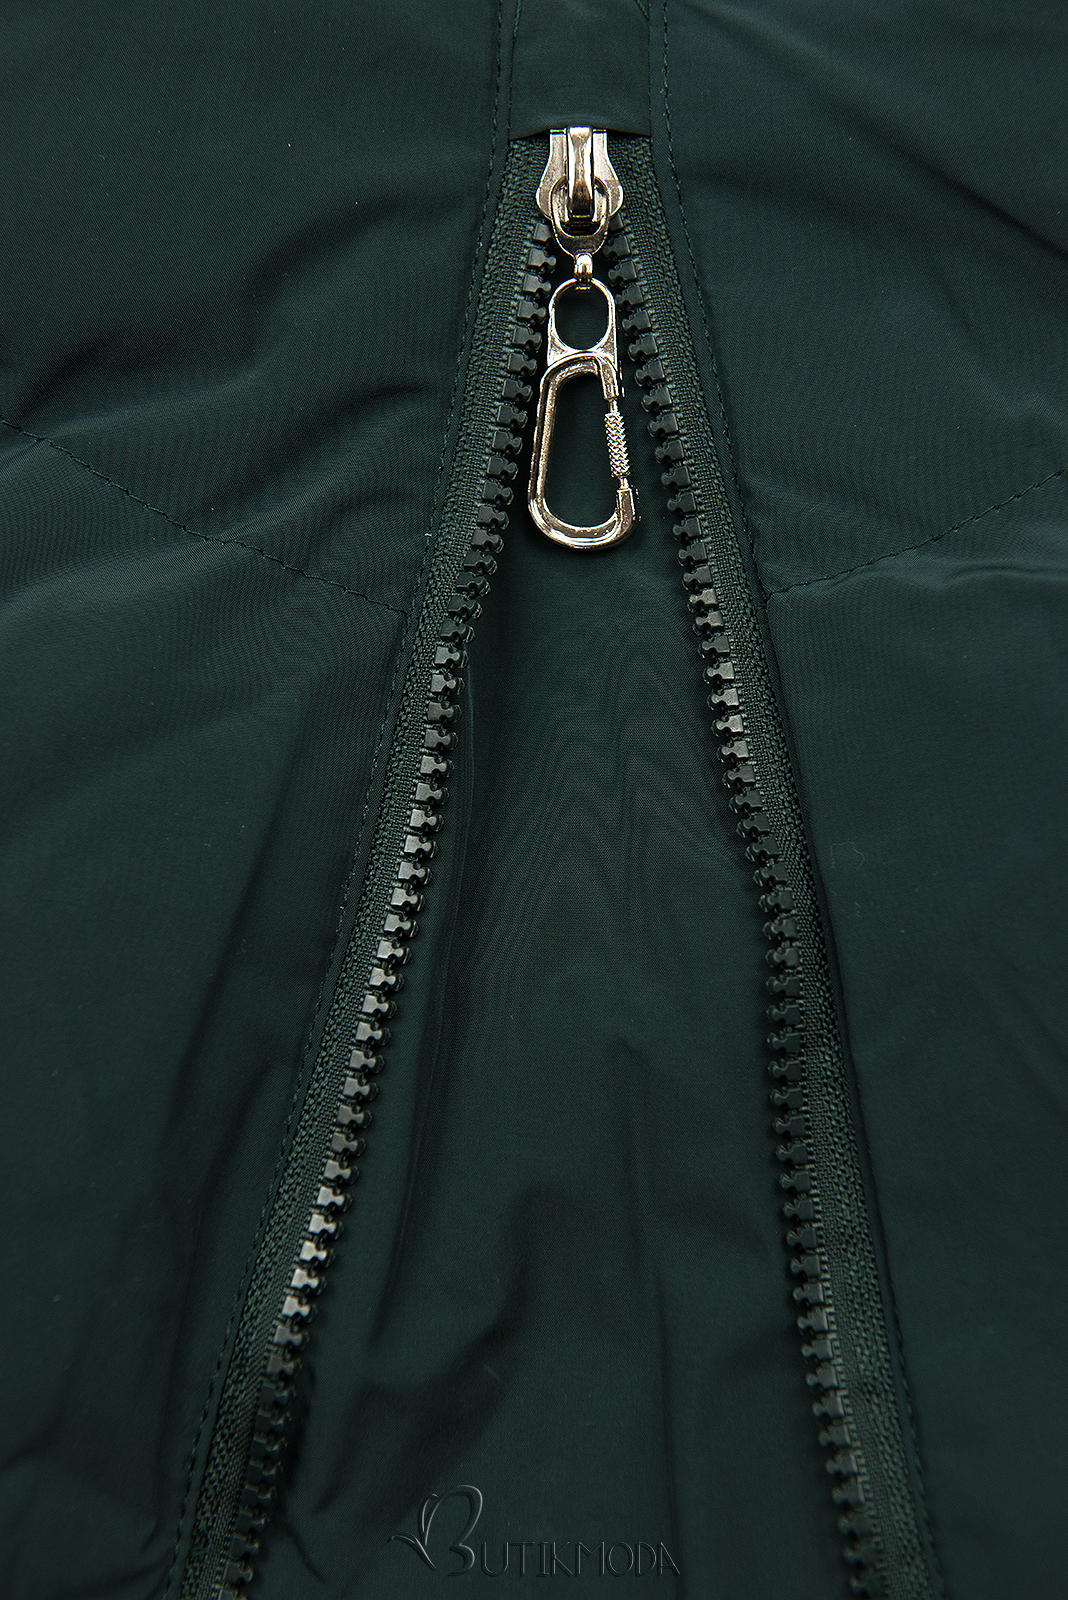 Sötétzöld színű teli kabát hosszított fazonban